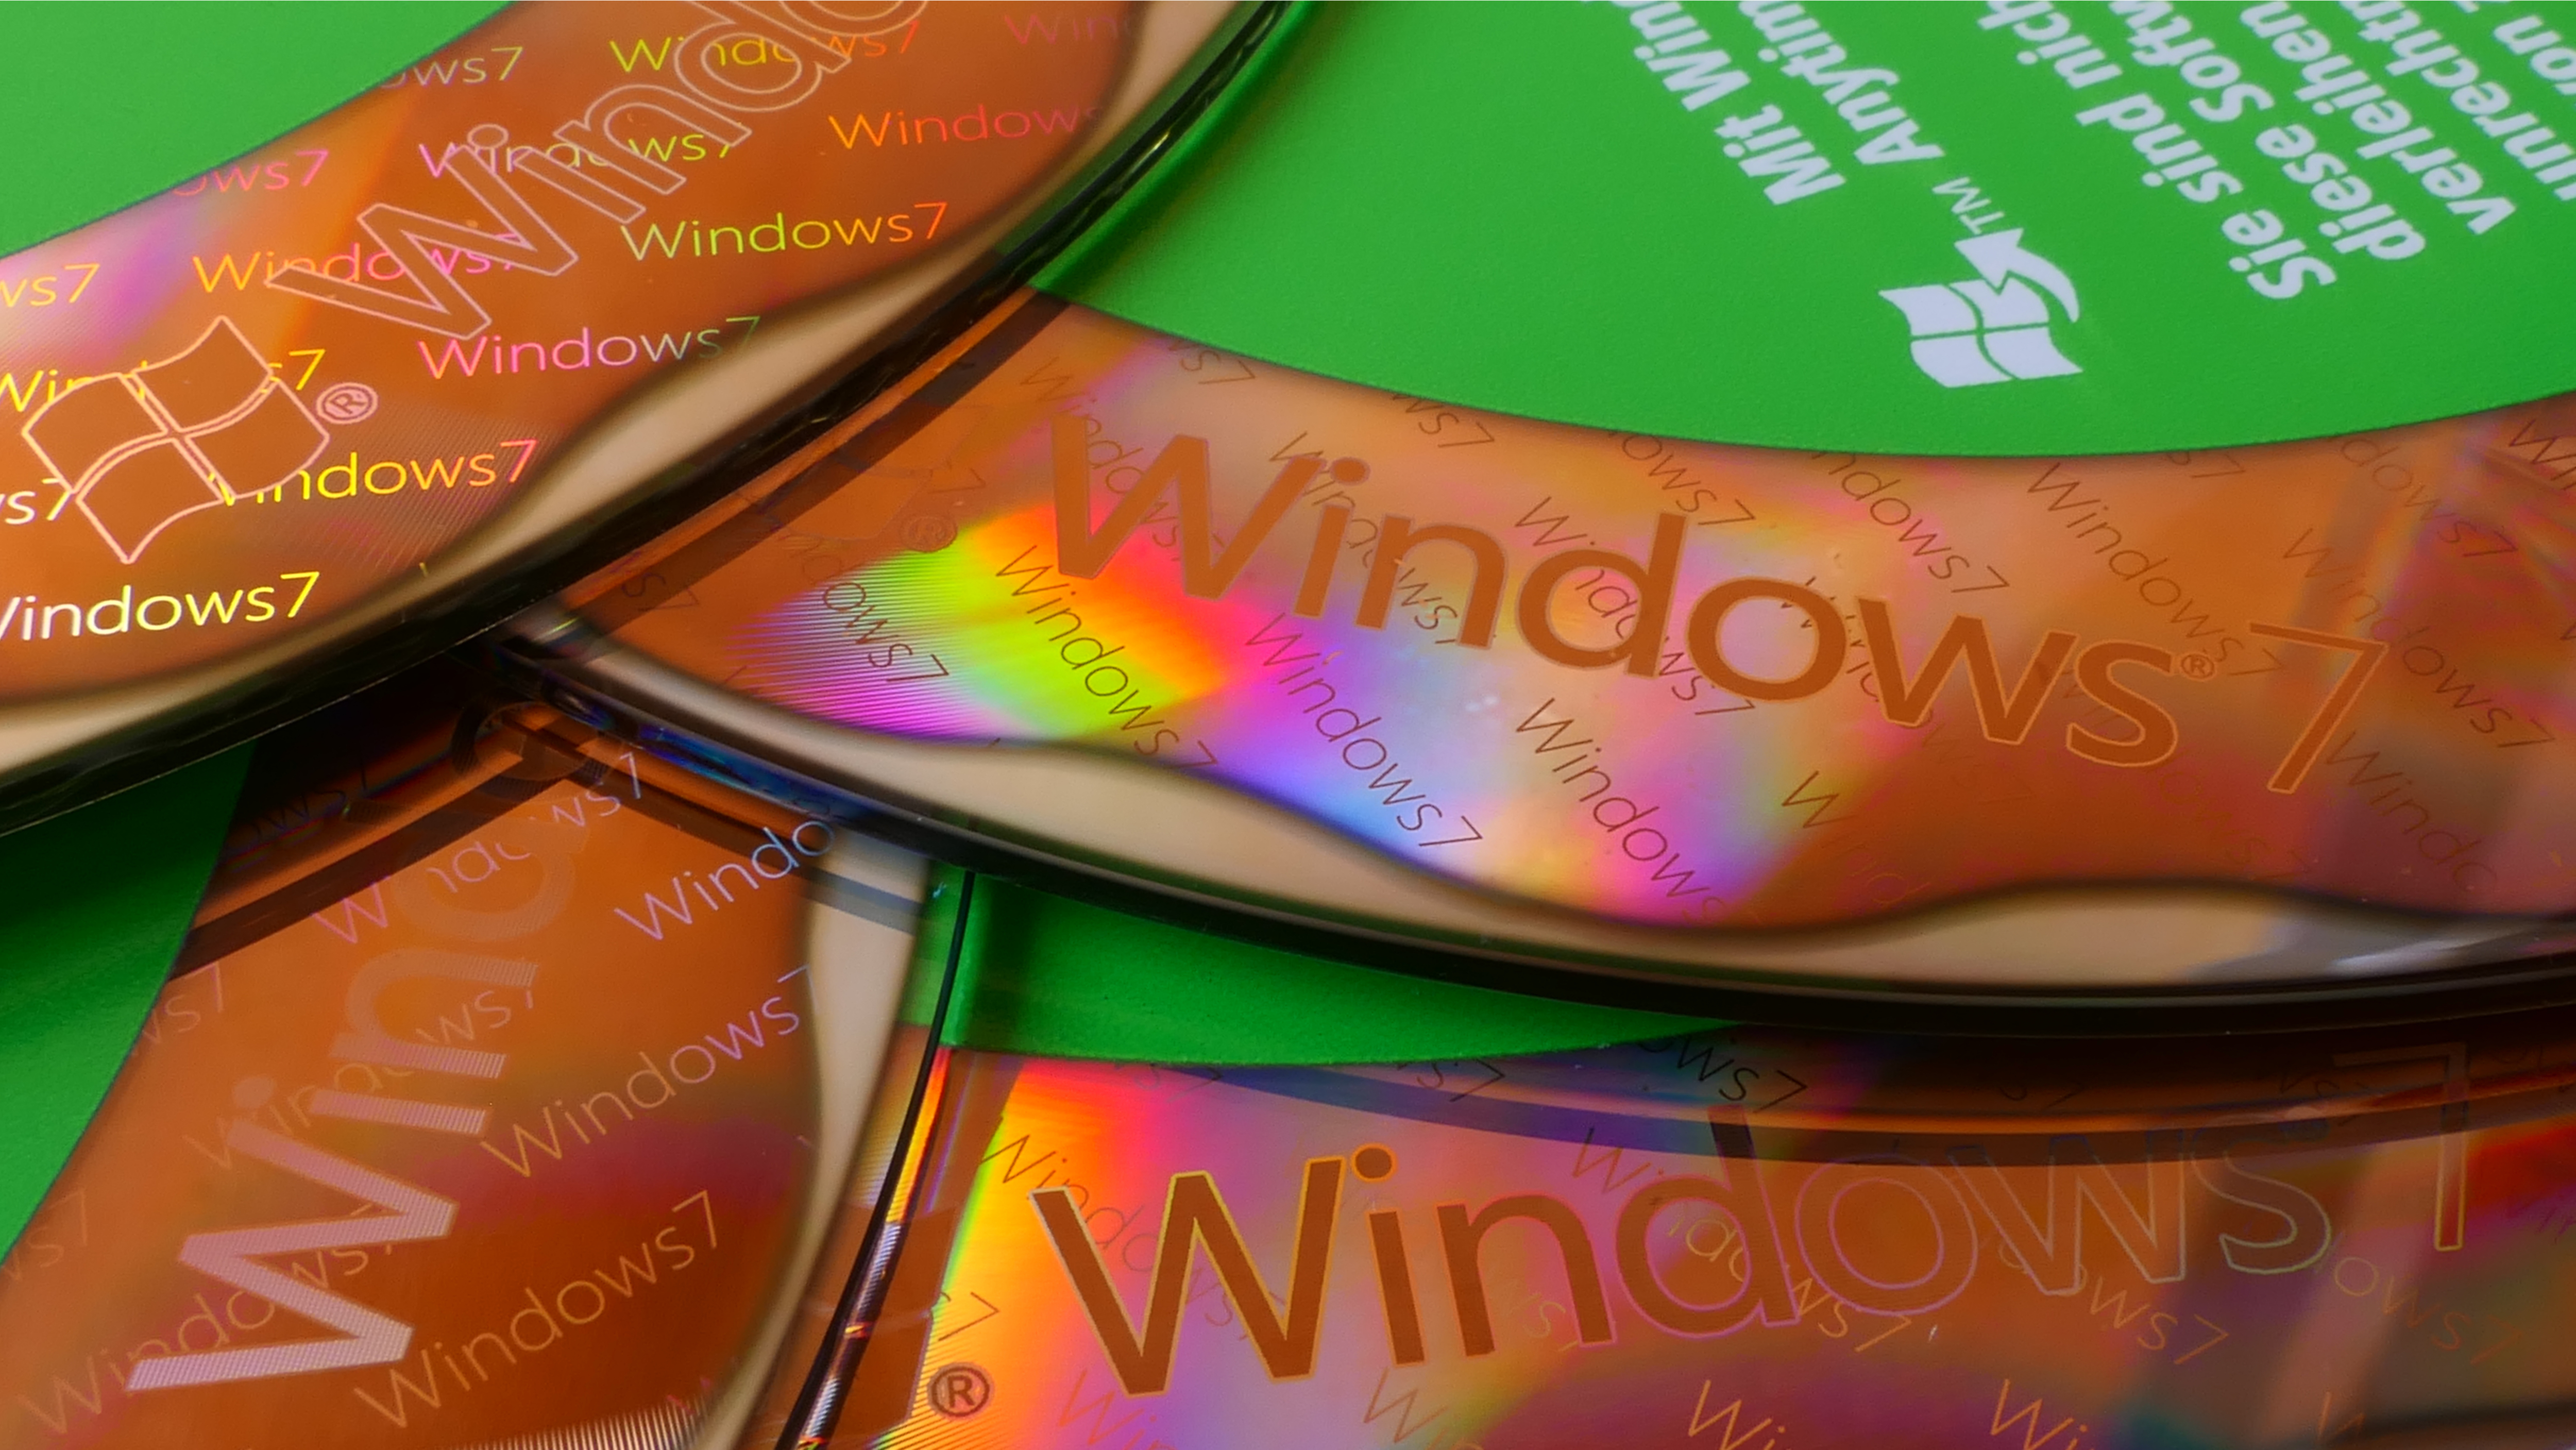 Windows 7 by mali žiť ako otvorený zdroj, veľkolepo optimistické požiadavky na petície 12